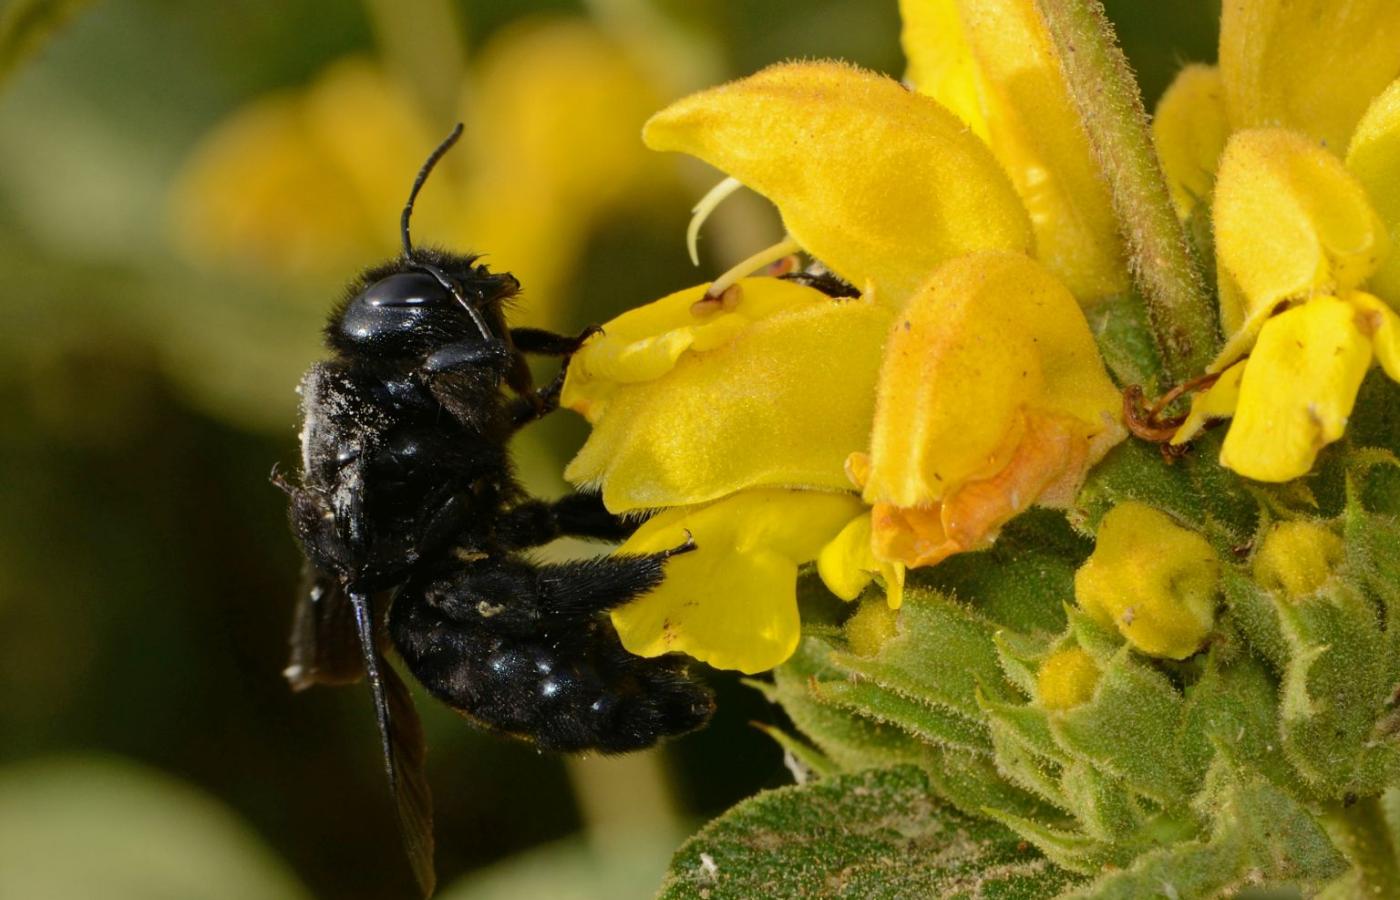 Samica czarnej pszczoły, czyli zadrzechni fioletowej (Xylocopa violacea), ma ciemnofioletowe ubarwienie i niemal czarne włoski.